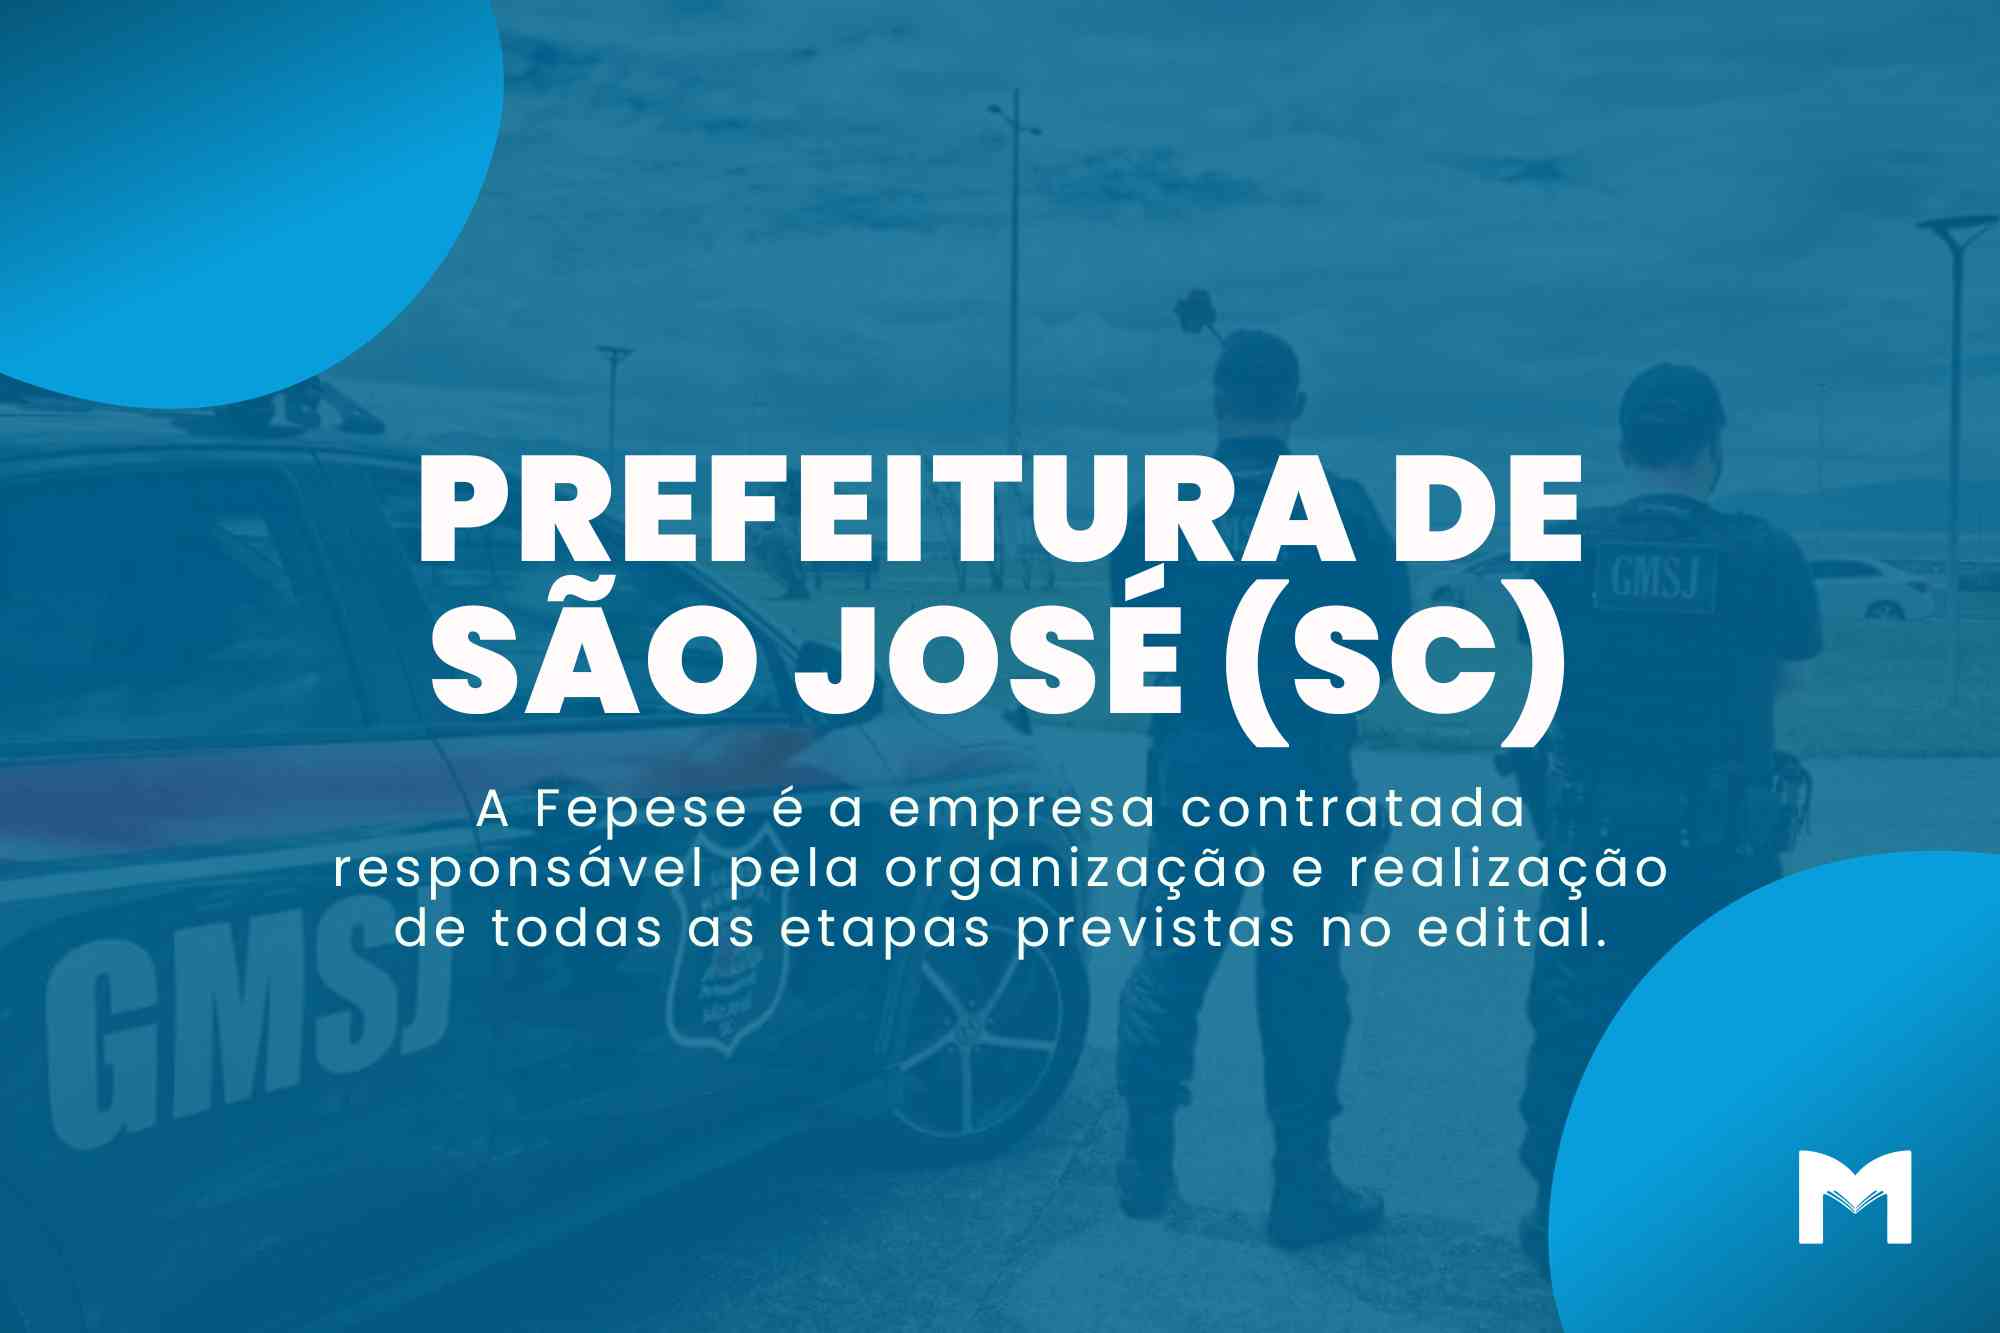 Concurso Prefeitura de São José SC: Edital para Guarda Municipal!